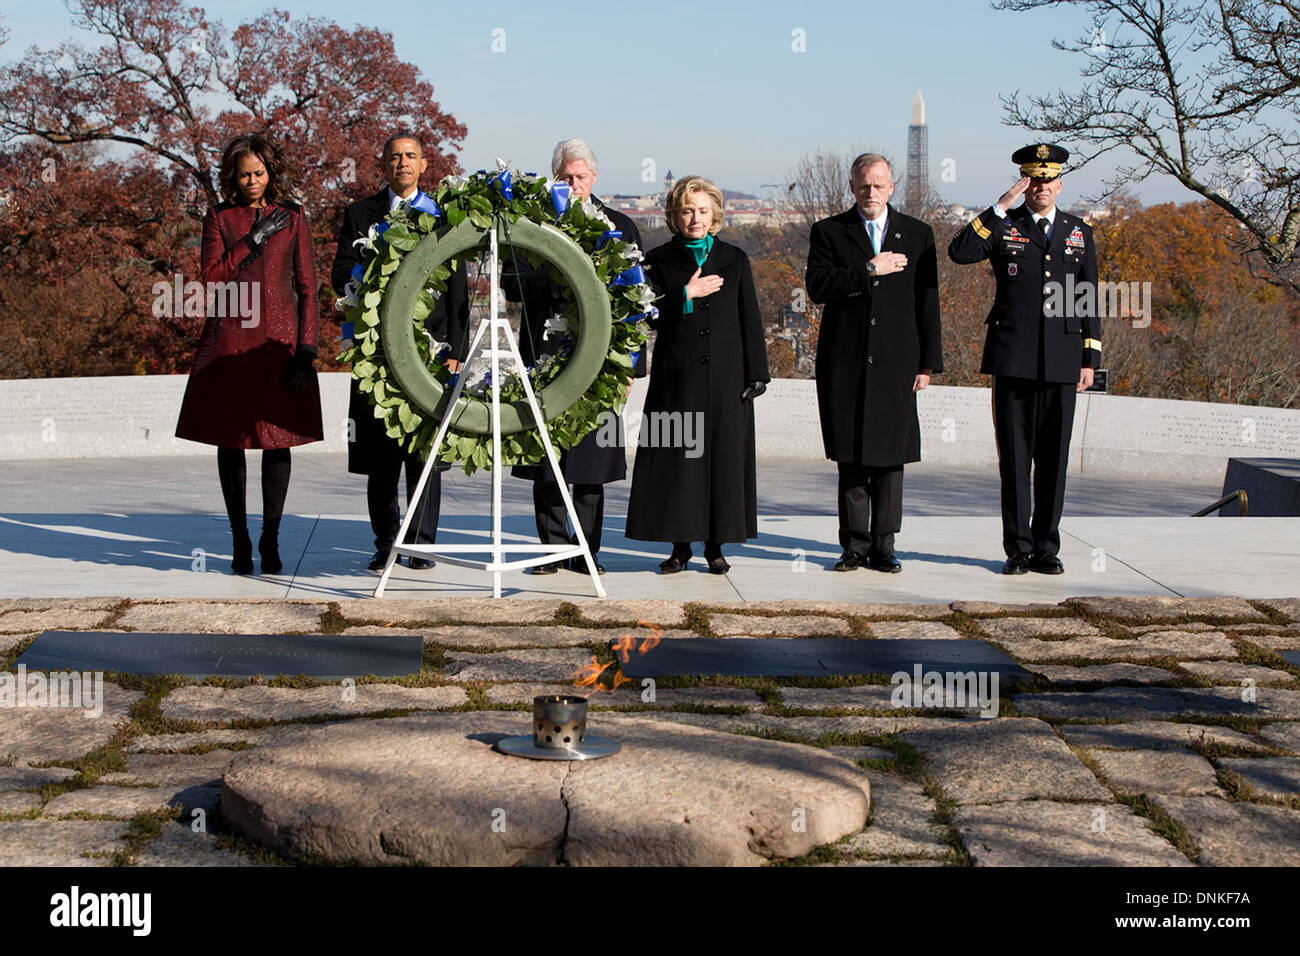 US-Präsident Barack Obama steht mit First Lady Michelle Obama, ehemaliger Präsident Bill Clinton, Hillary Clinton und andere bei einer Kranzniederlegung Zeremonie am Grab von John F. Kennedy auf dem Nationalfriedhof Arlington anlässlich des 50. Jahrestages der Ermordung 20. November 2013 in Arlington, VA. Stockfoto